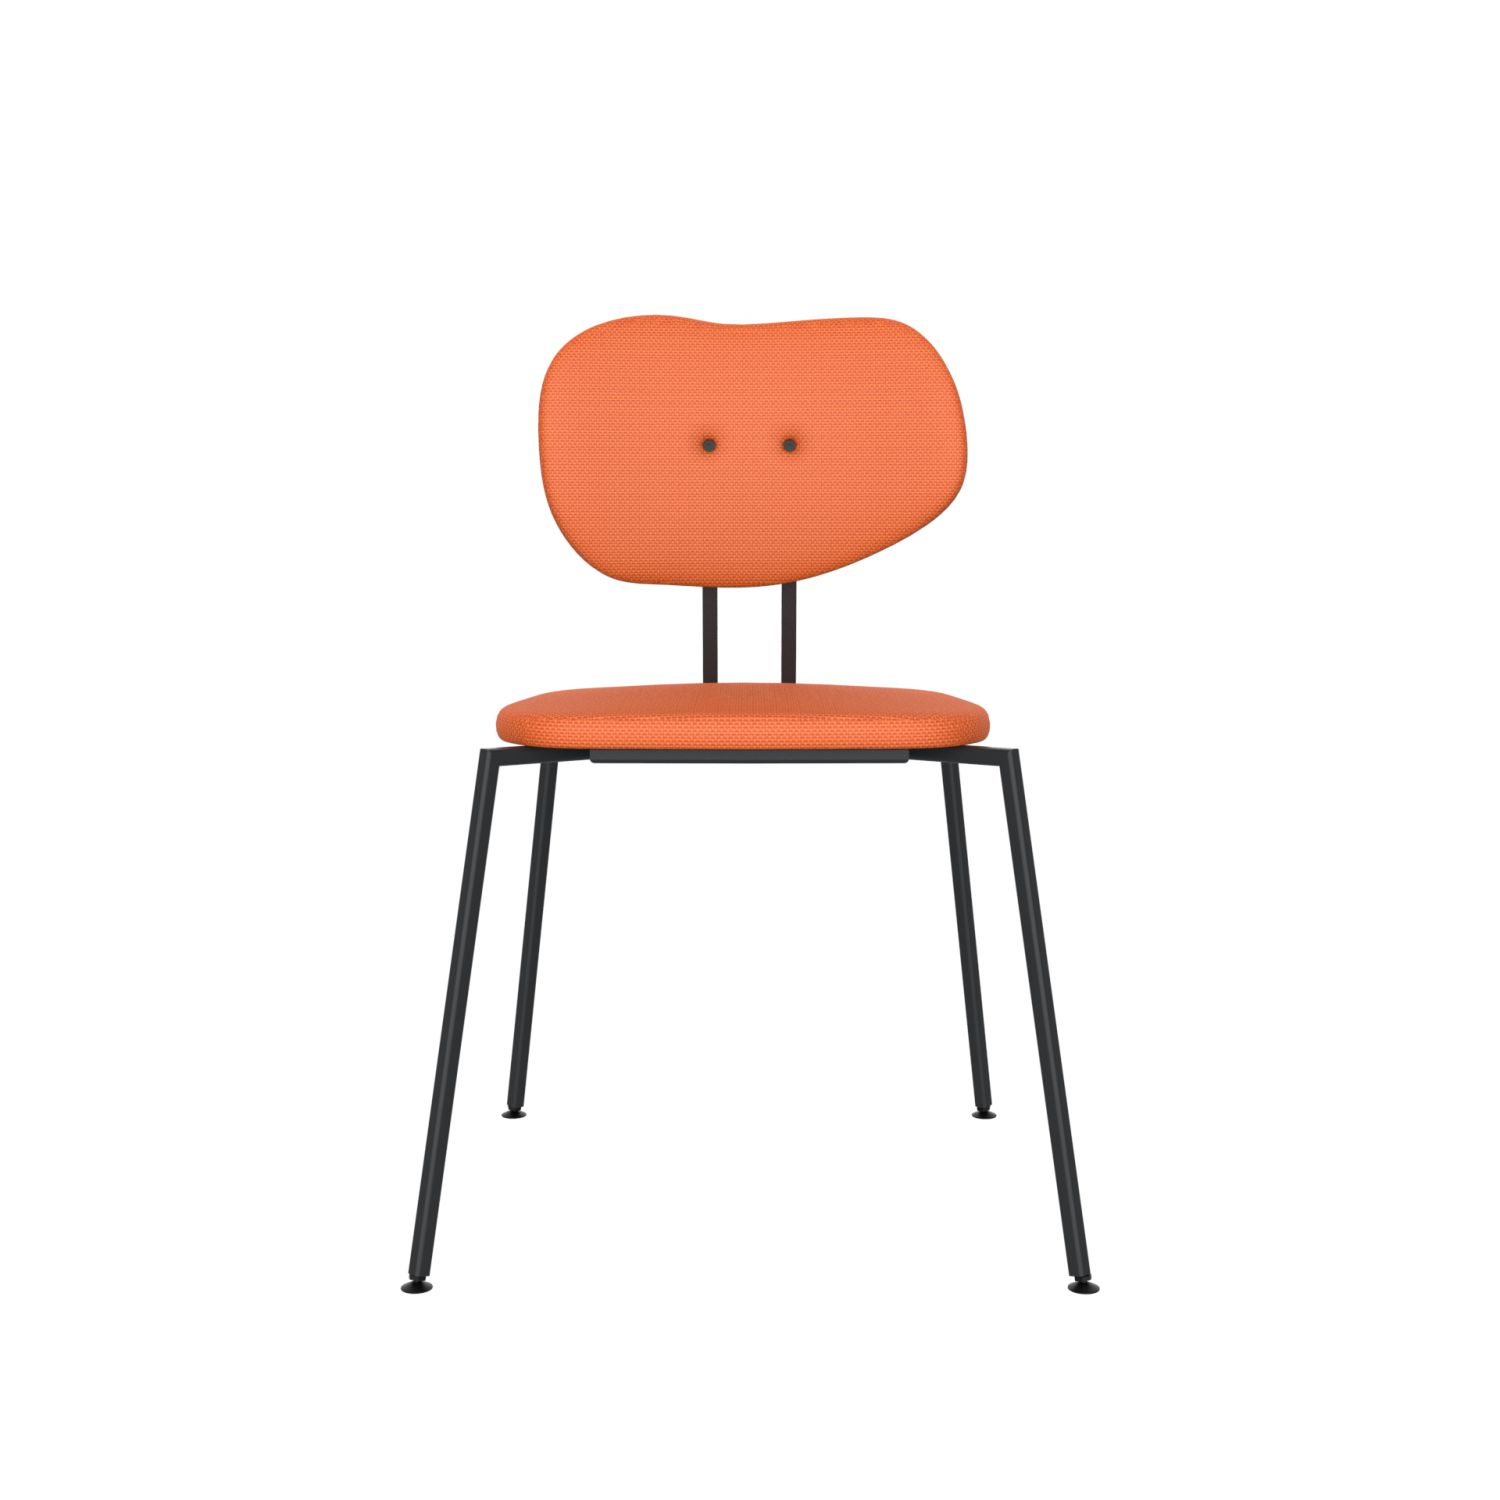 lensvelt maarten baas chair 141 stackable without armrests backrest b burn orange 102 black ral9005 hard leg ends